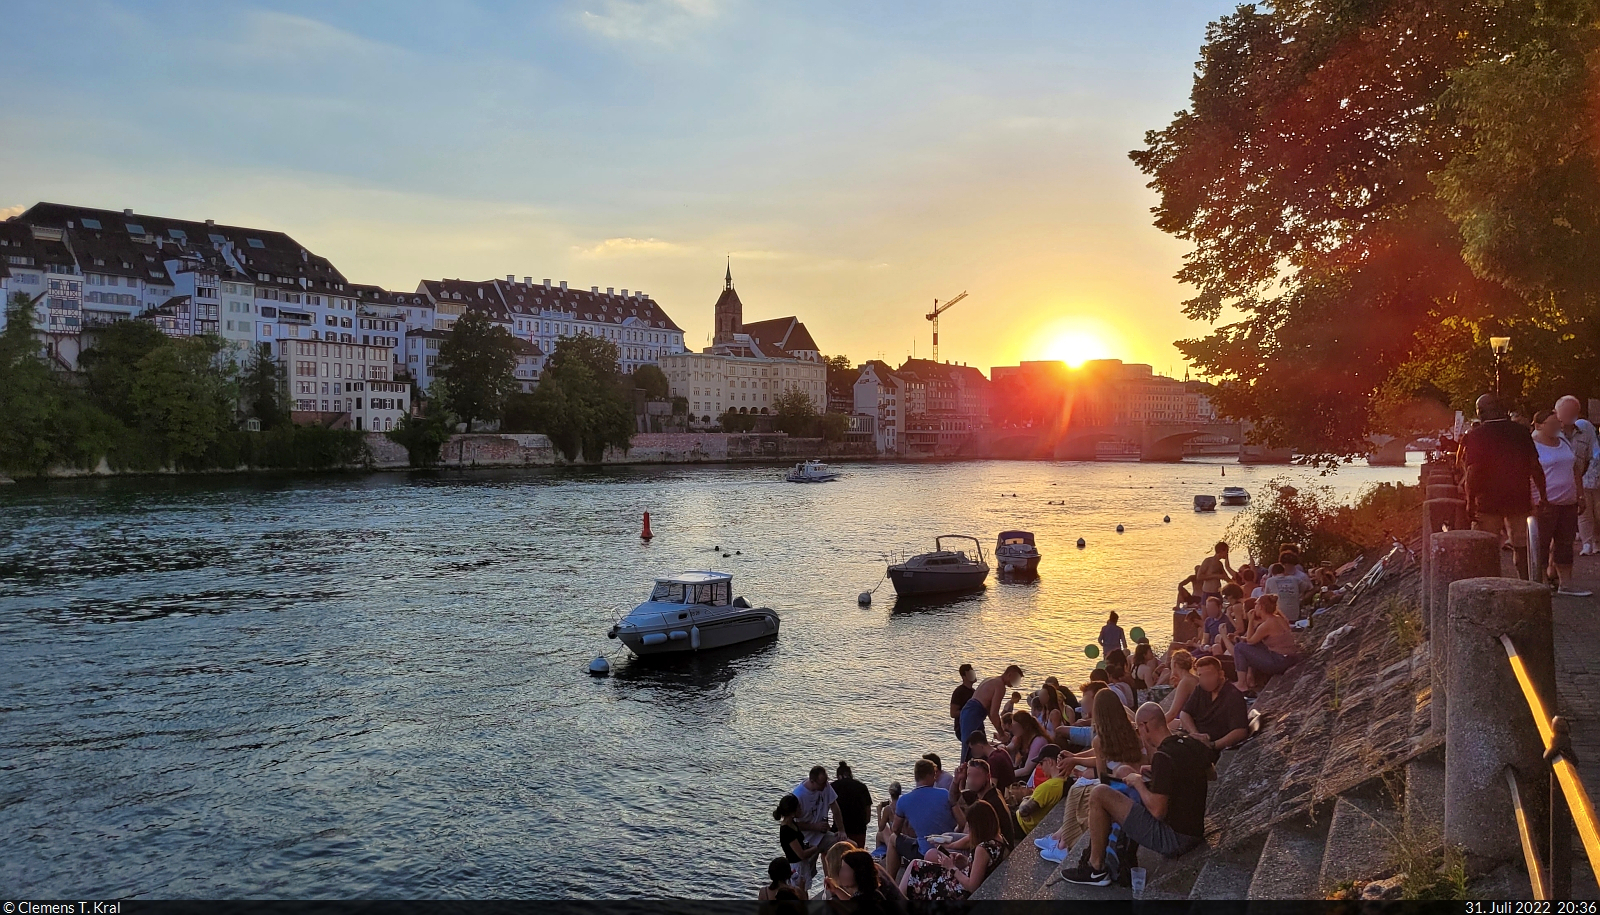 Whrend die Sonne verschwindet, herrscht am Rheinufer in Basel (CH) noch reges Treiben. Traditionell wird immer am 31. Juli in den Schweizer Nationalfeiertag hineingefeiert.

🕓 31.7.2022 | 20:36 Uhr